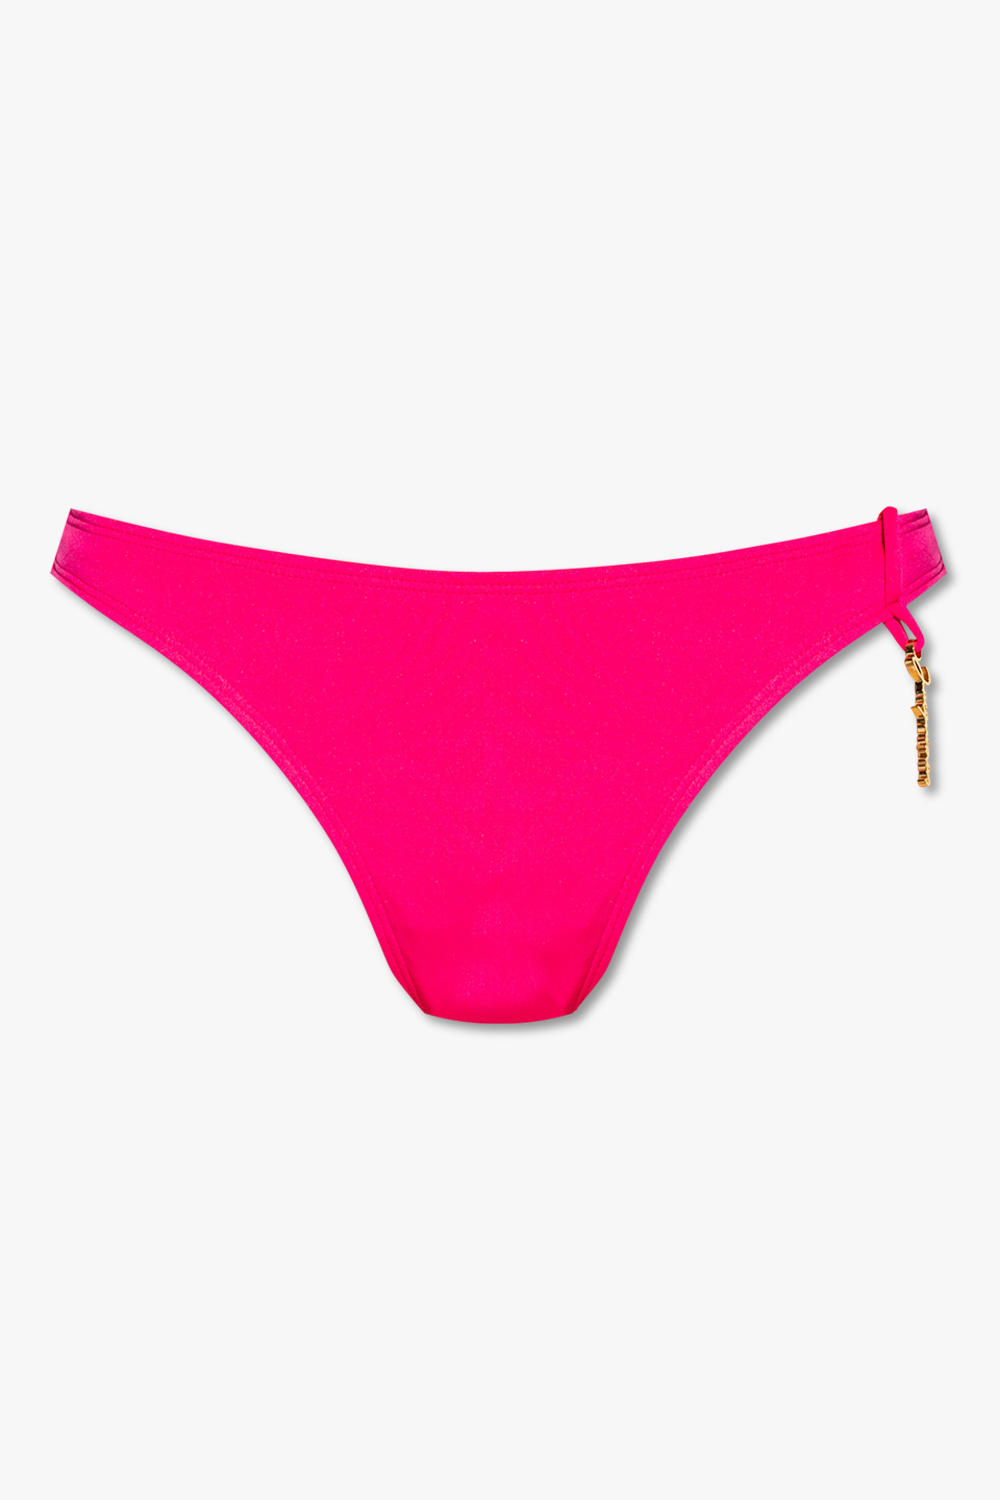 Jacquemus ‘Signature’ bikini briefs